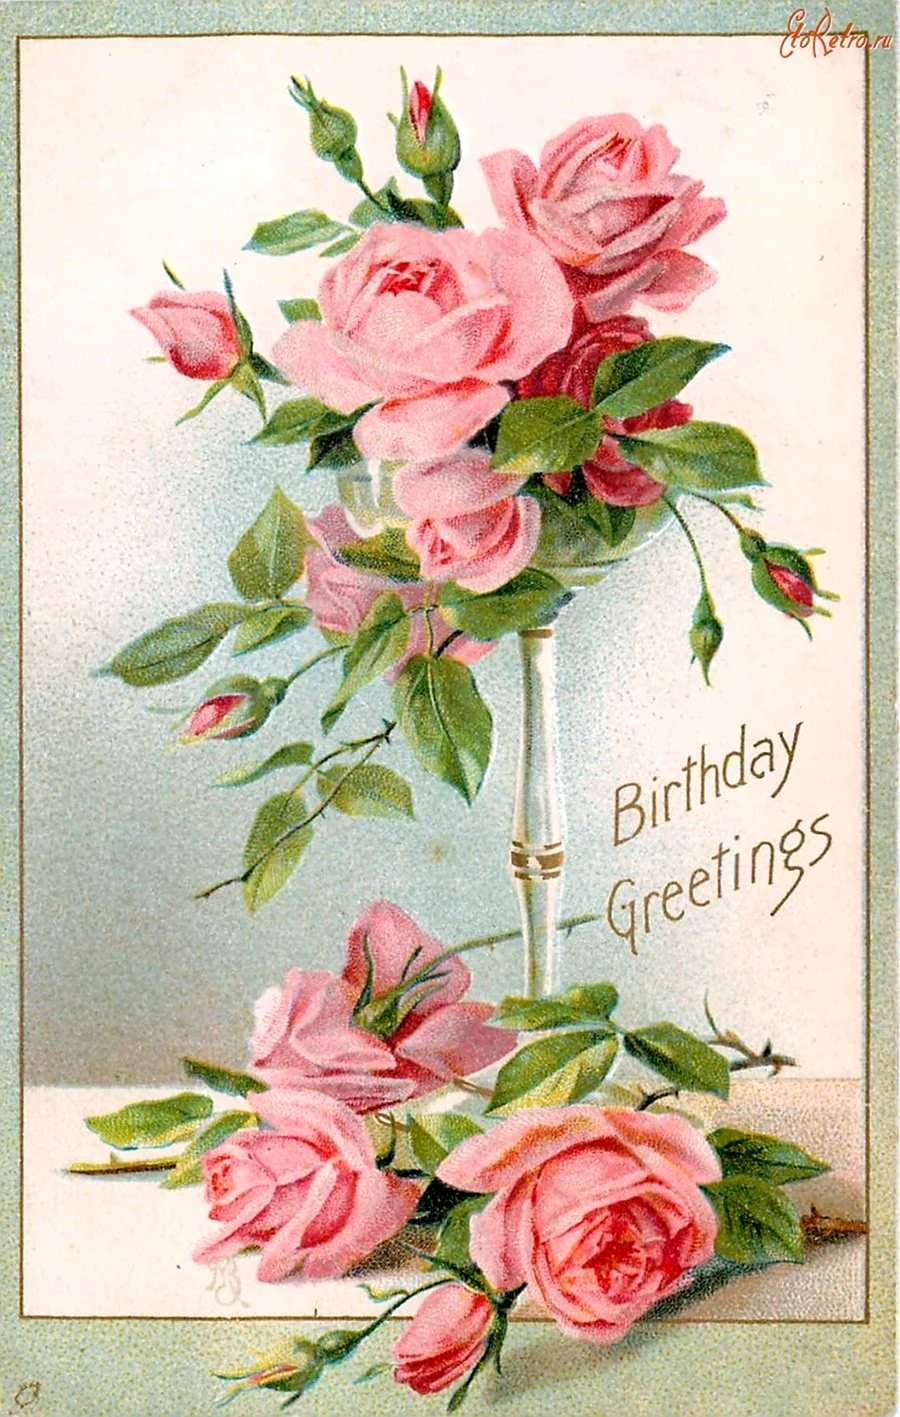 Винтажная открытка с цветами